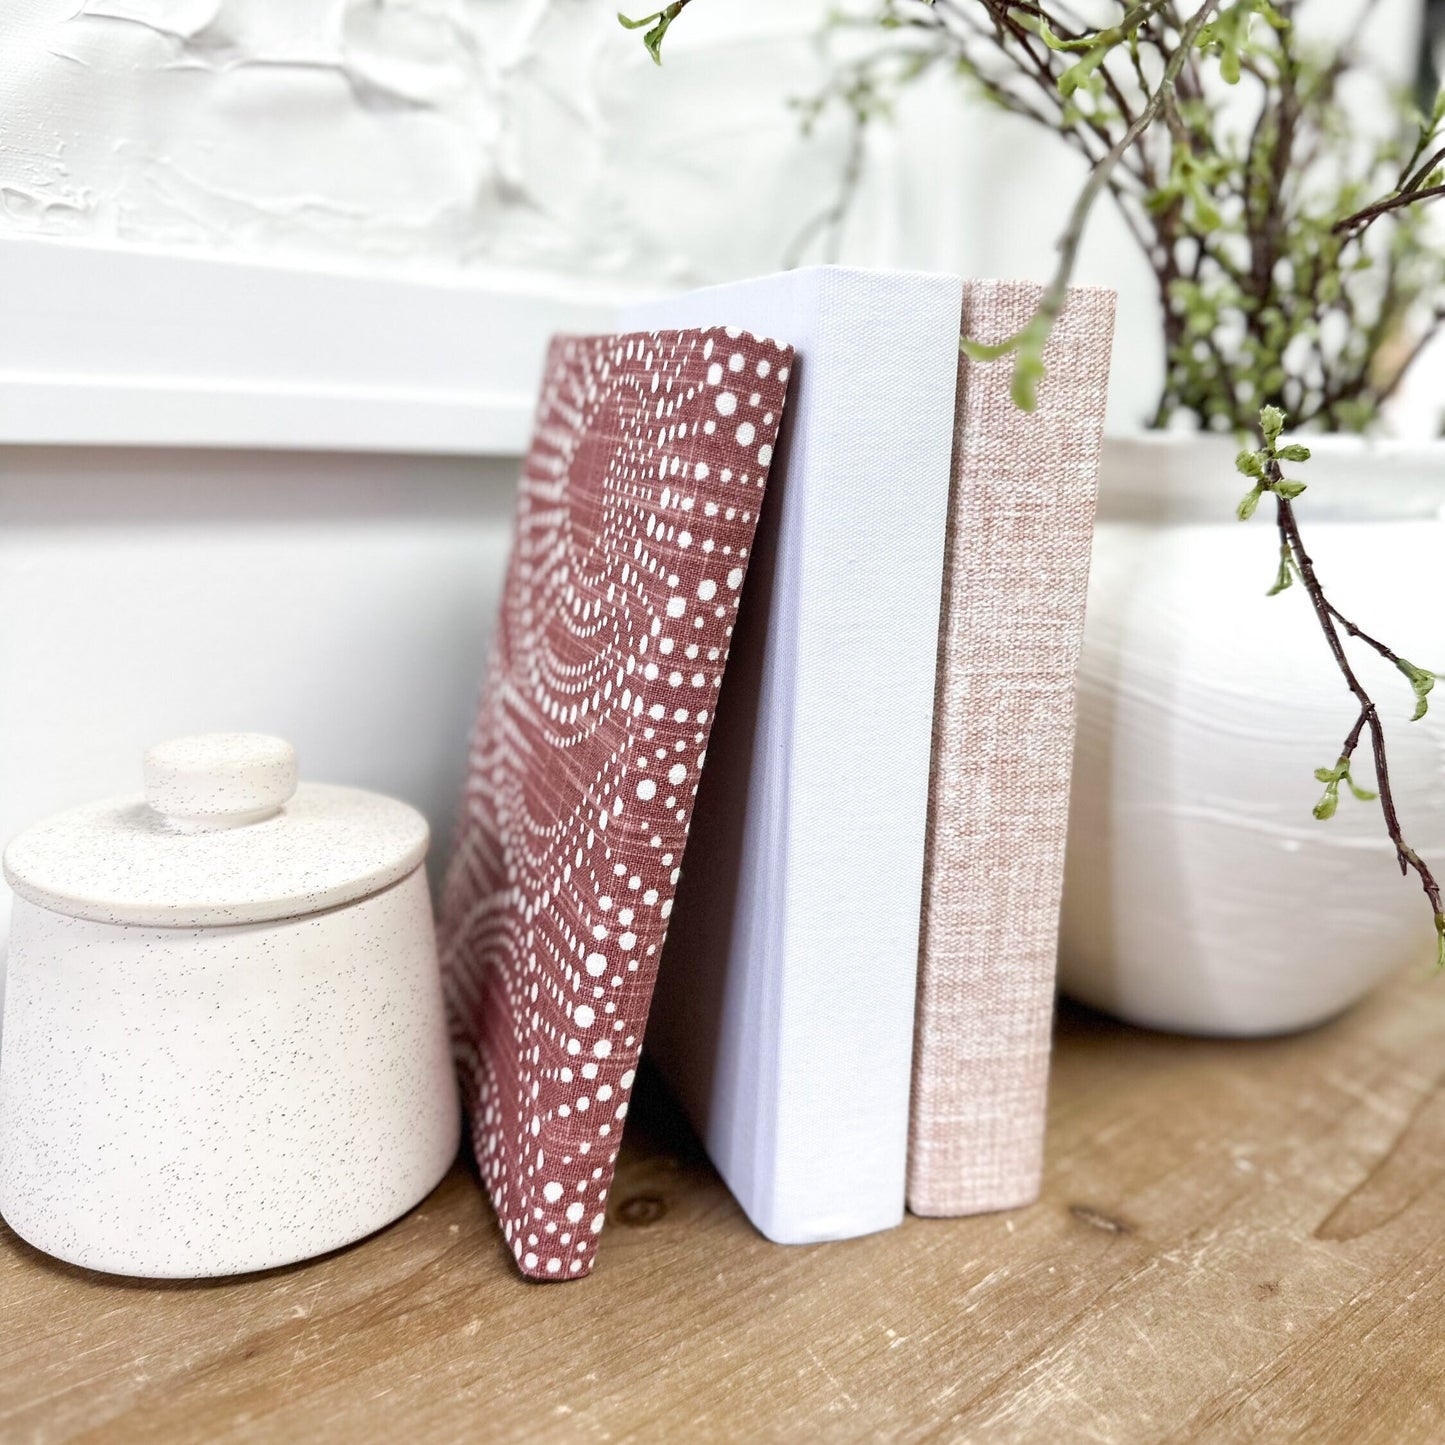 Blush Decorative Books for Shelf Decor, Fabric Wrapped, Designer Books, Book Set